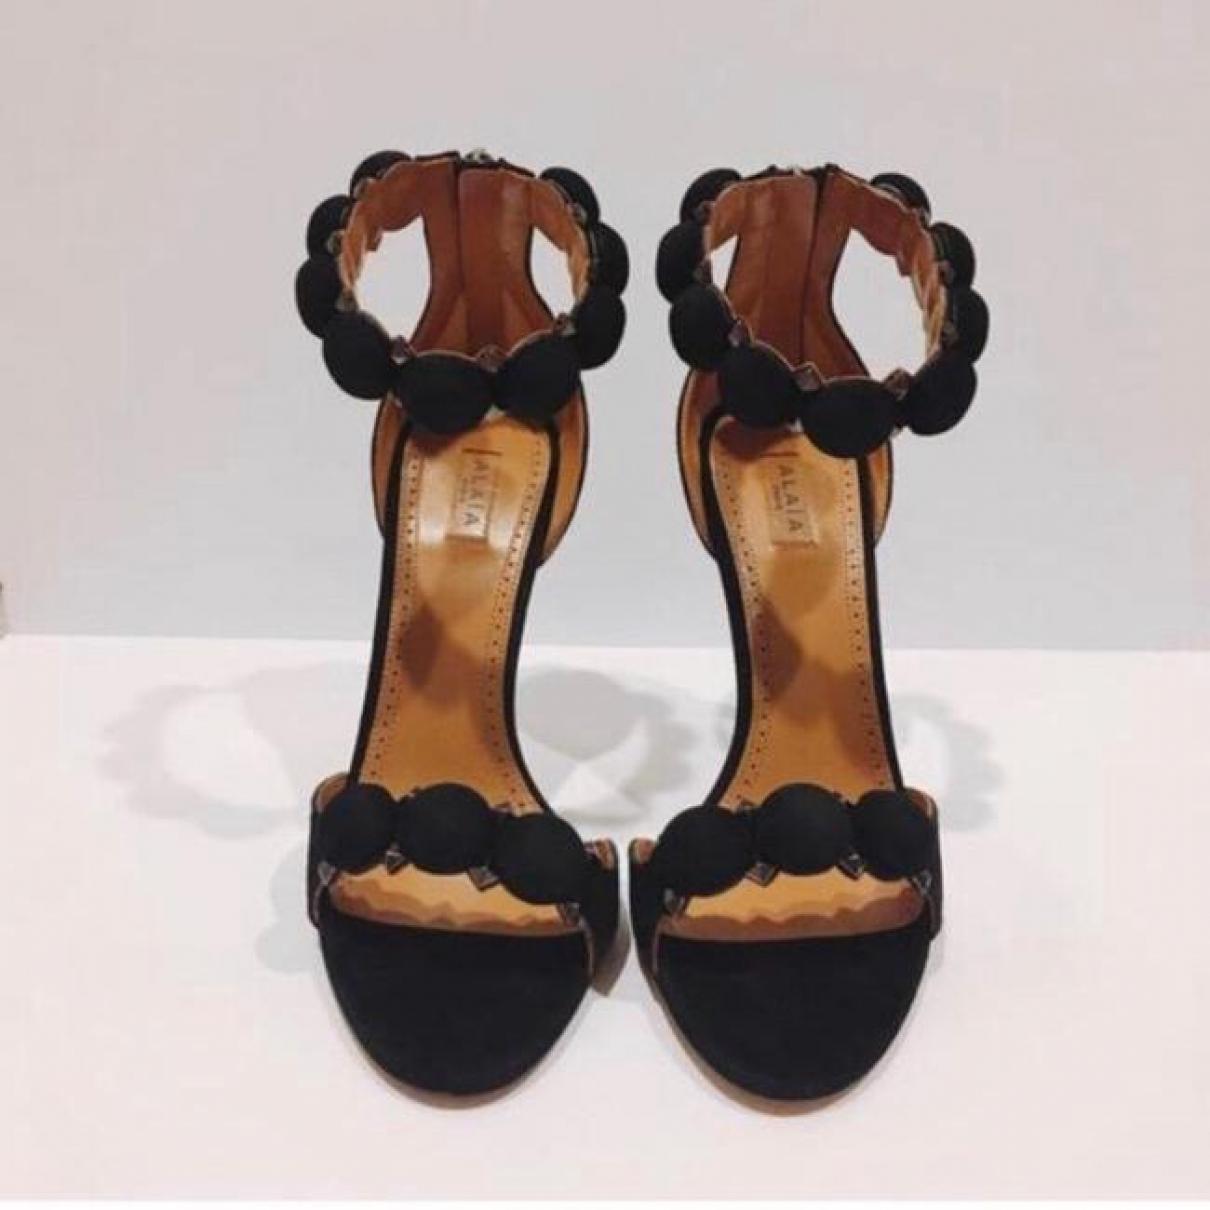 Leather heels - 7